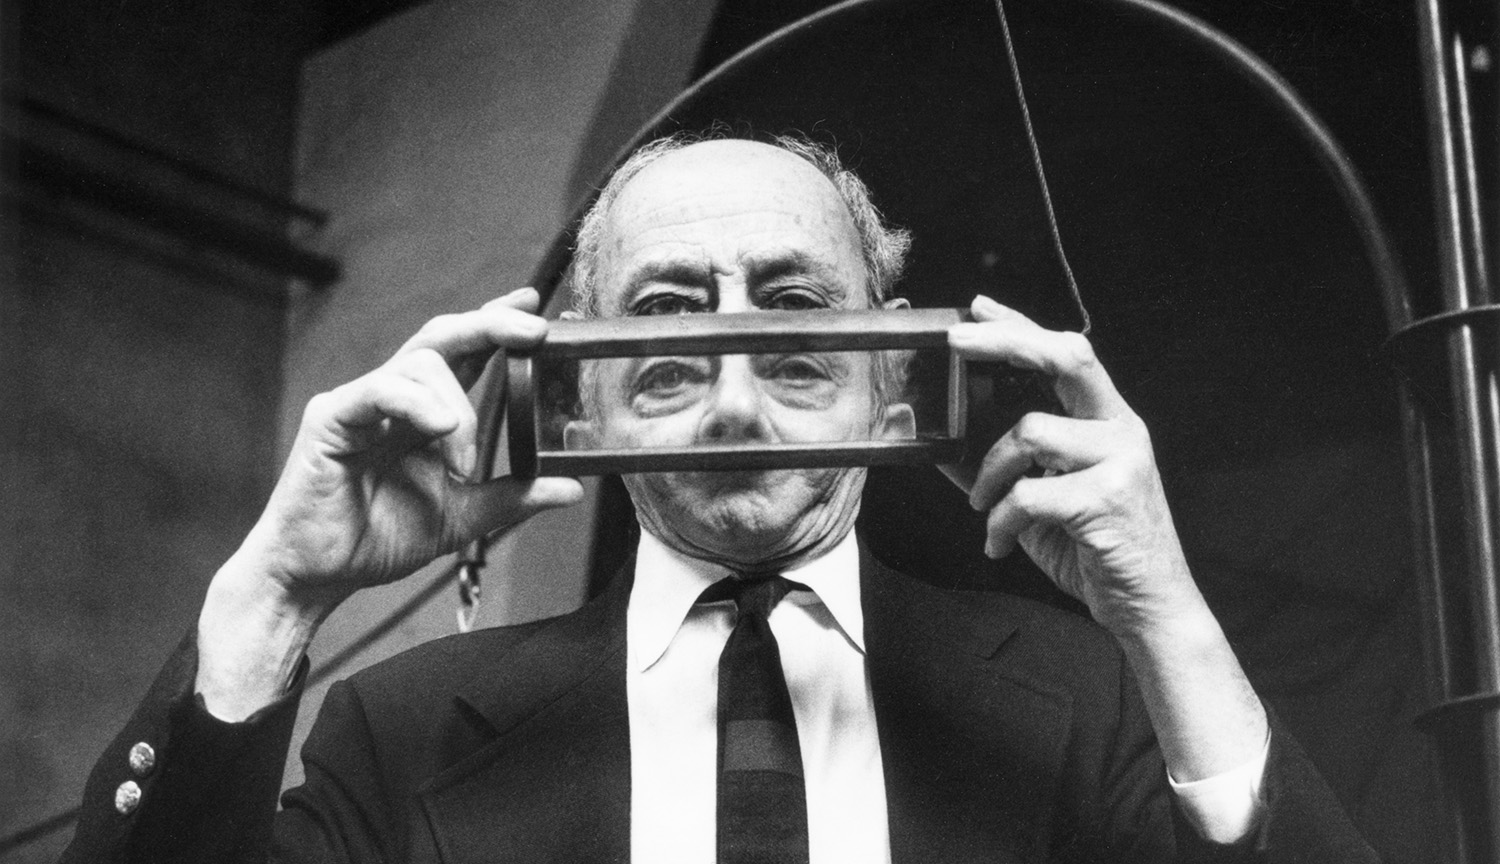 Foto de un hombre mayor sosteniendo un prisma transparente enmarcado, que bloquea y distorsiona parcialmente su rostro.